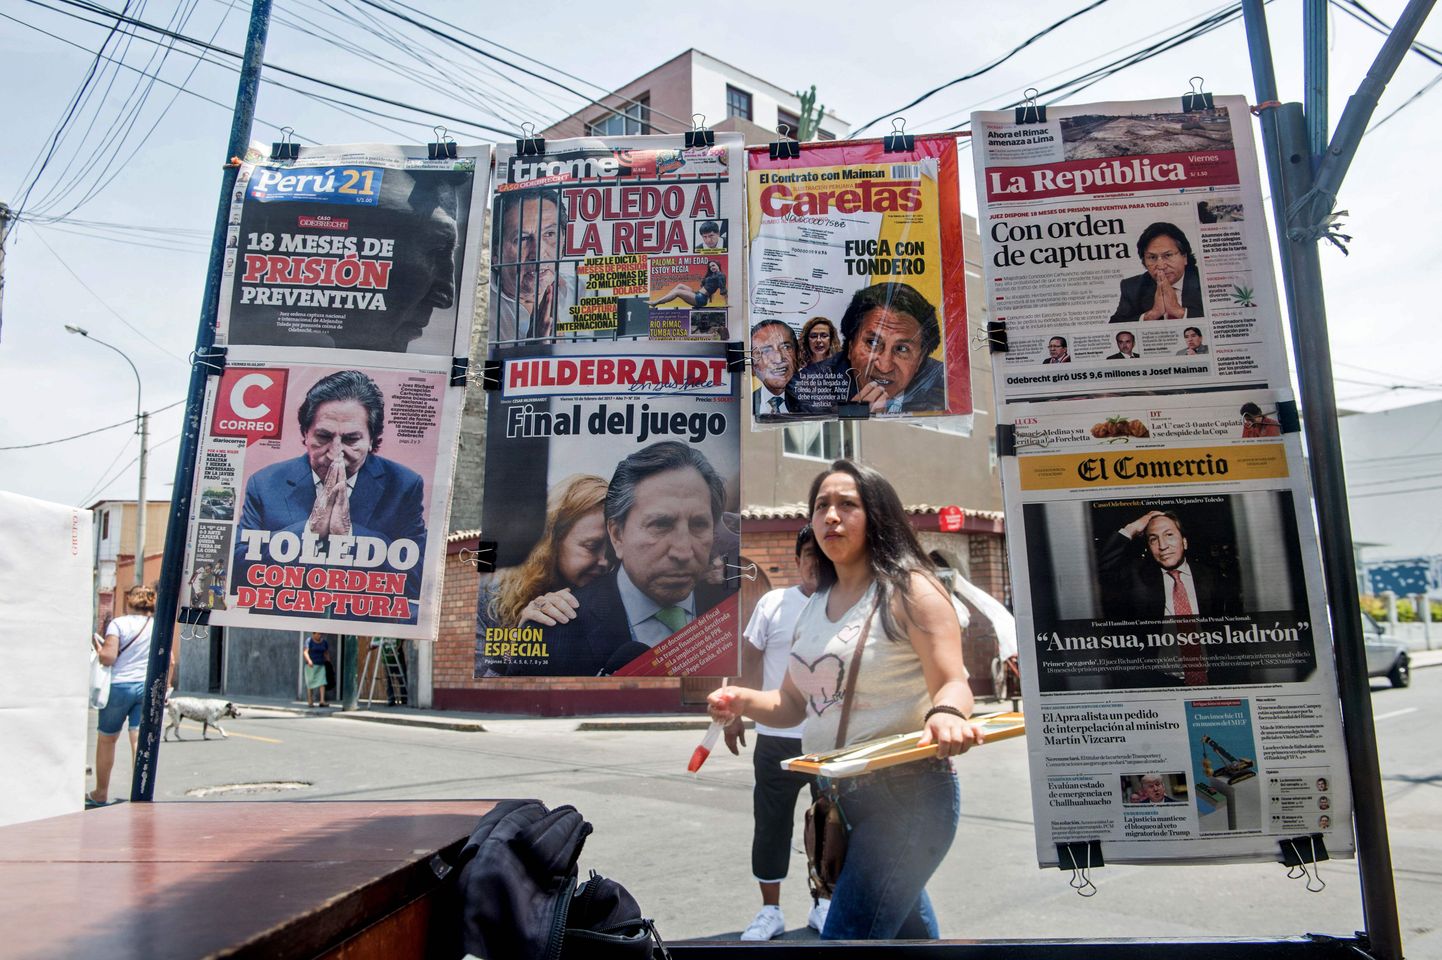 Peruu meedias on ekspresident Alejandro Toledo taas esikülgedel.